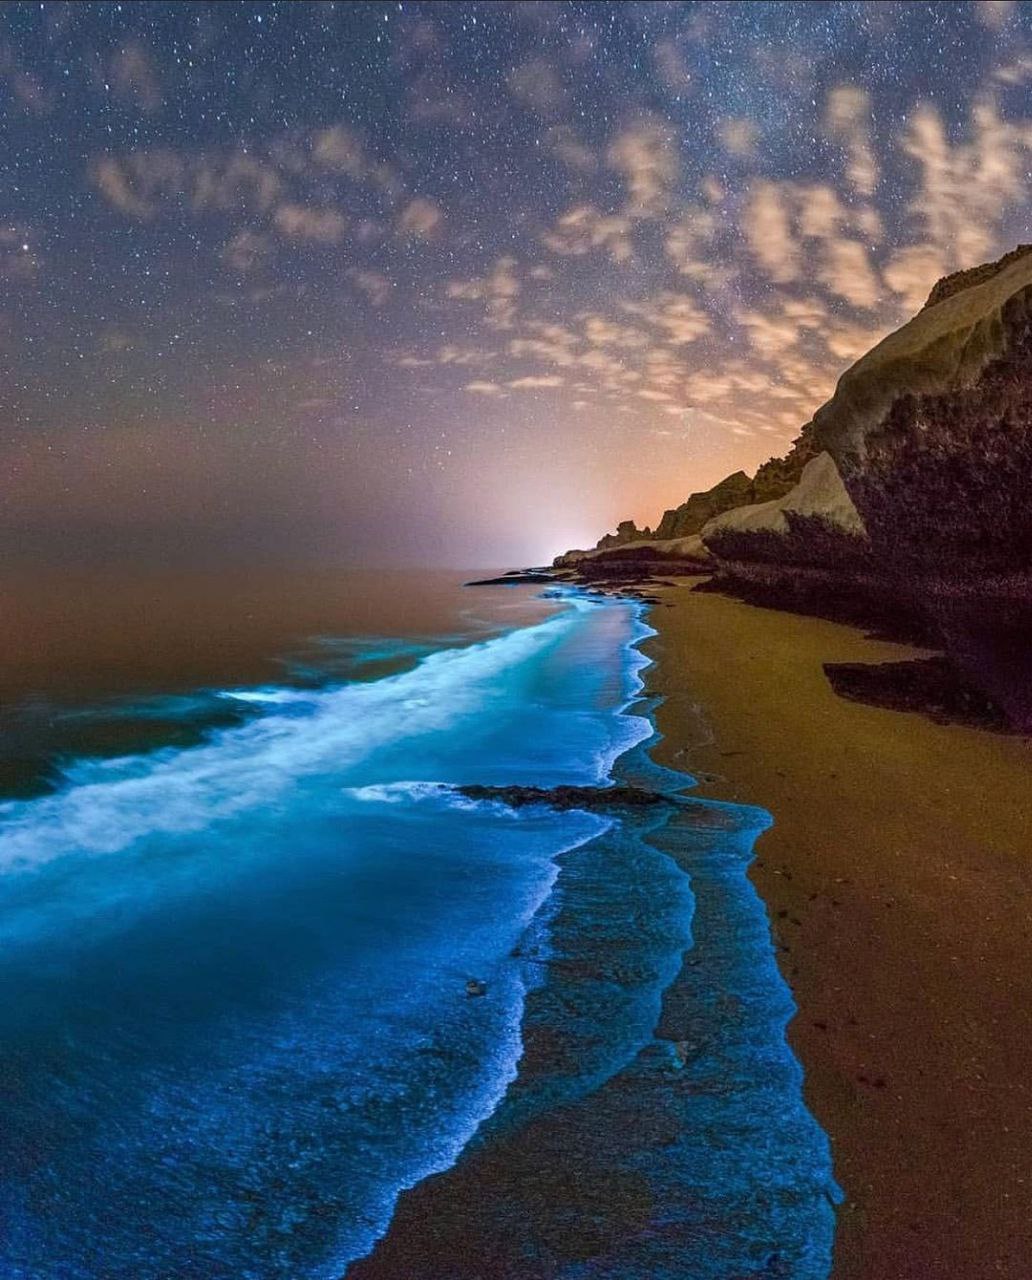 نمایی زیبا از ساحل خلیج فارس + عکس